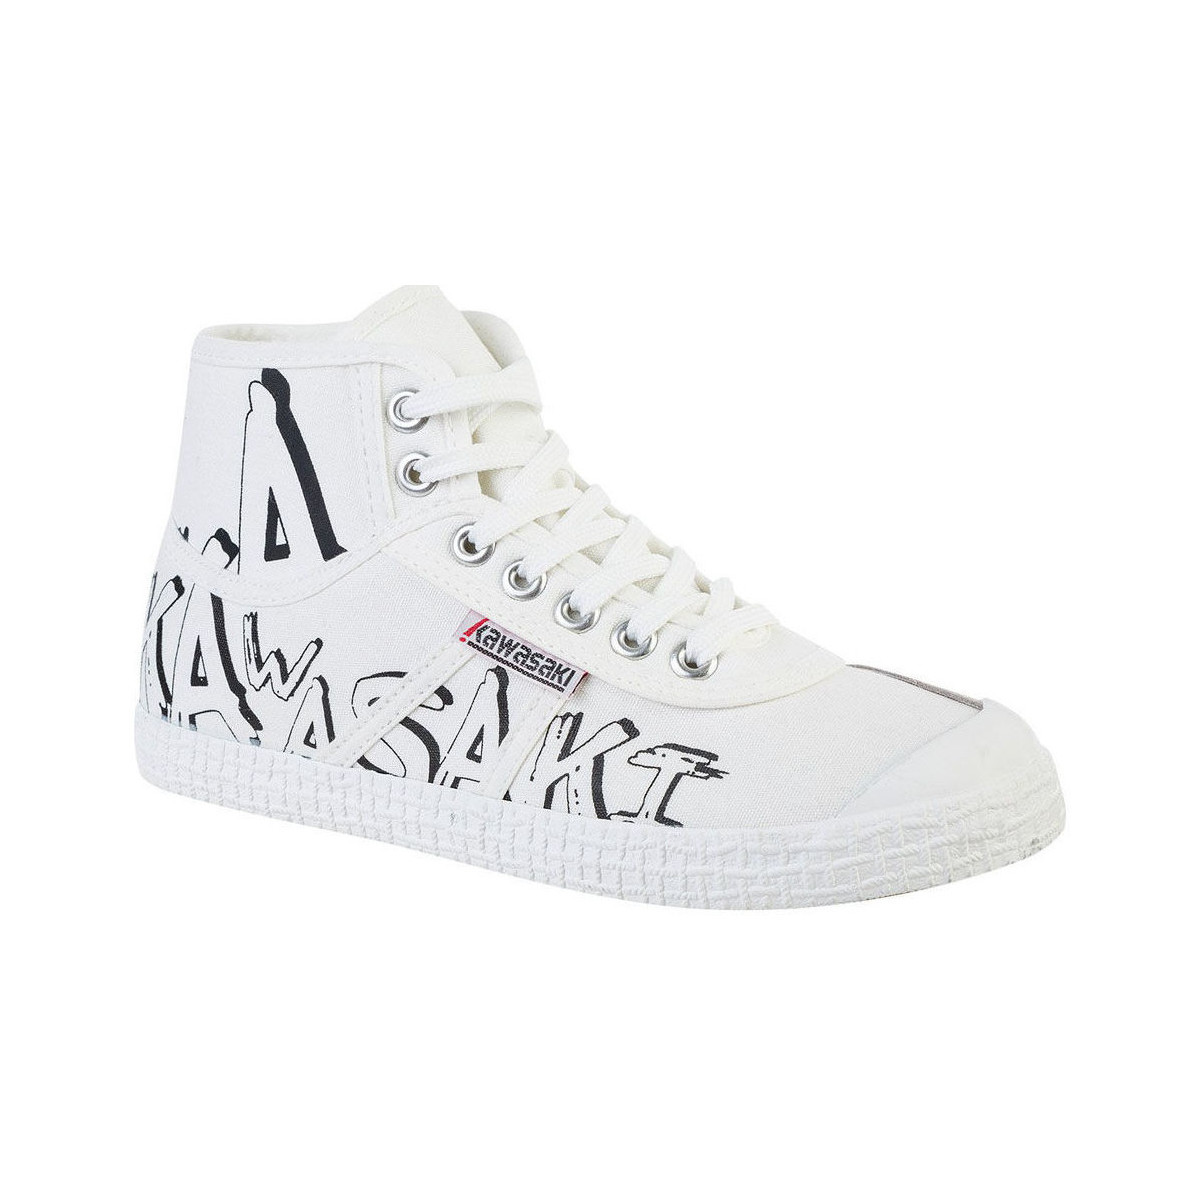 Schoenen Dames Sneakers Kawasaki Graffiti Canvas Boot K202415 1002 White Wit